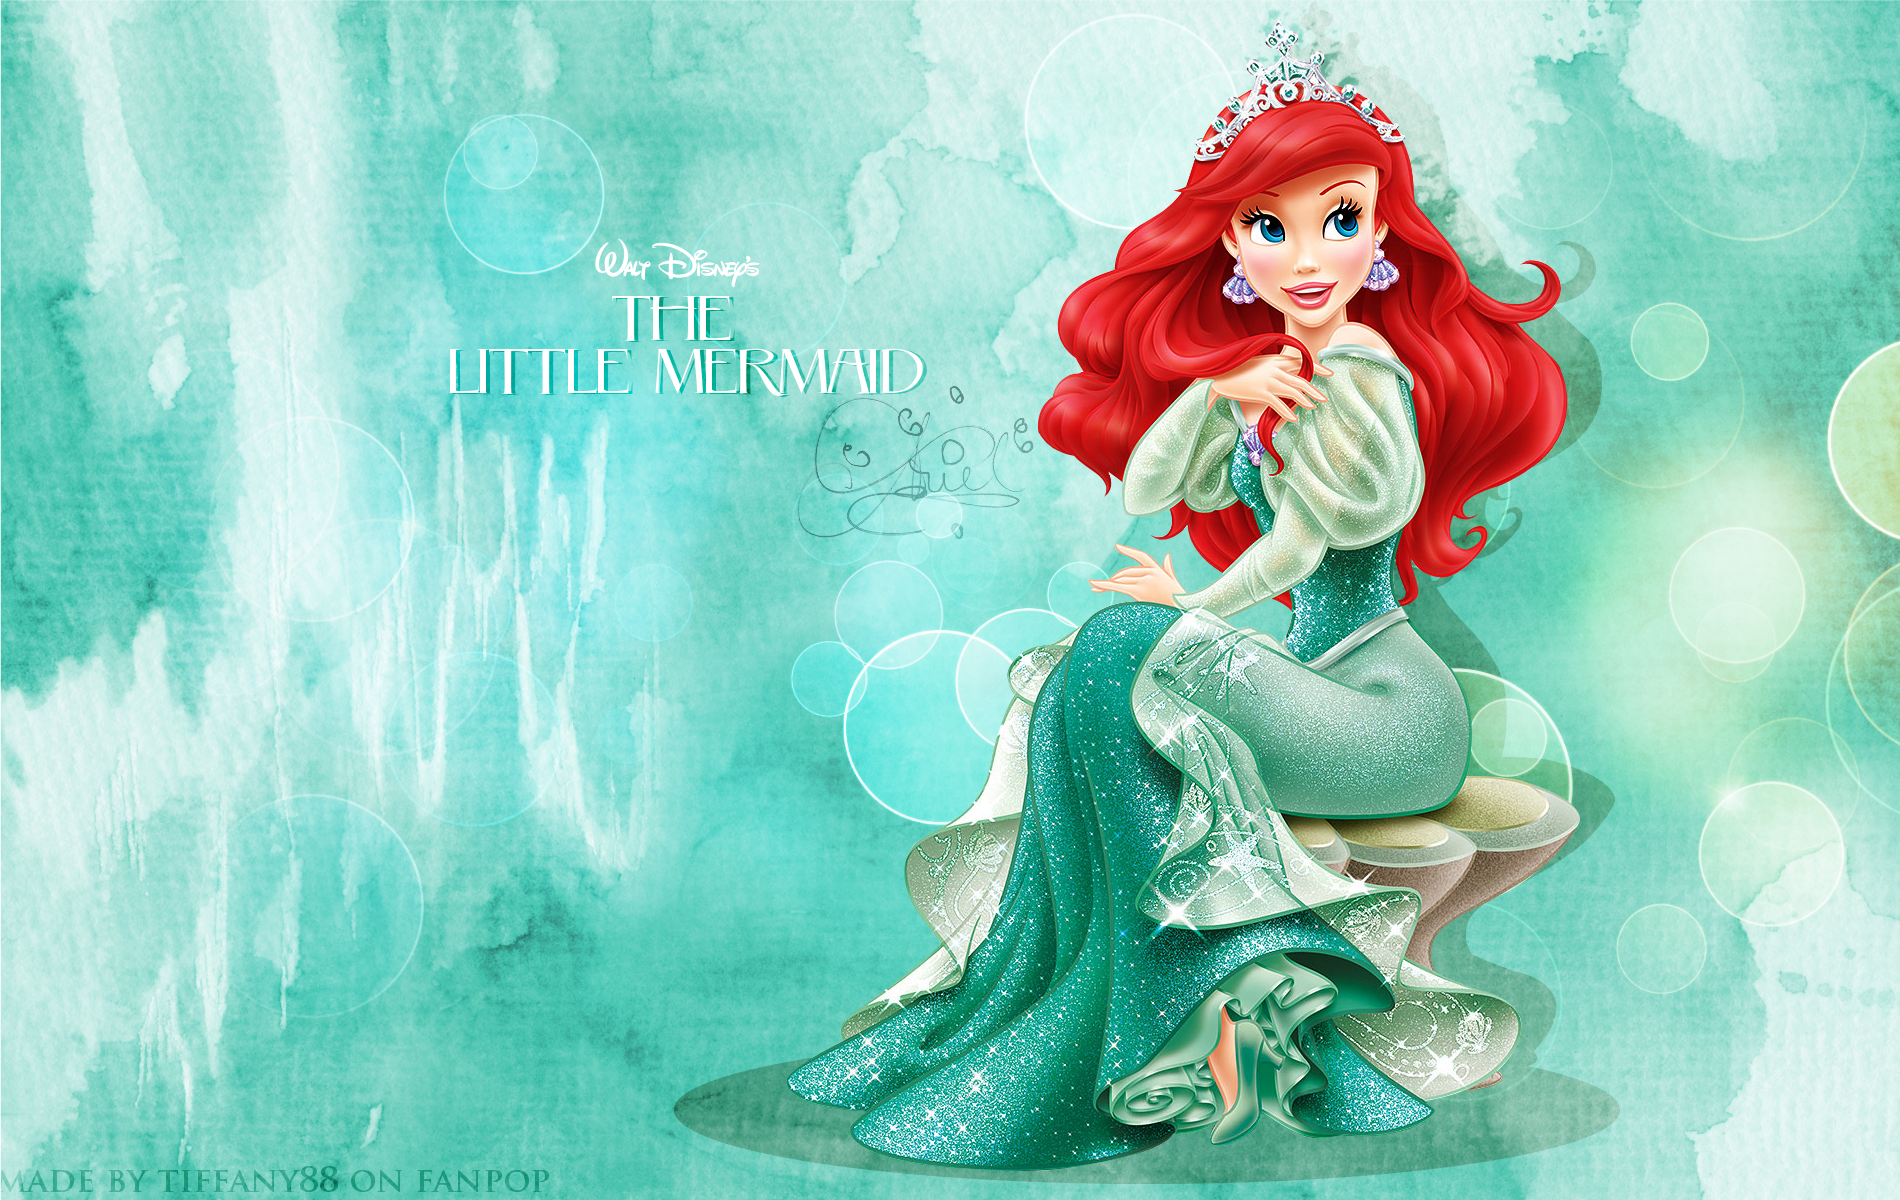 Disney Princess Image Ariel Wallpaper Photos